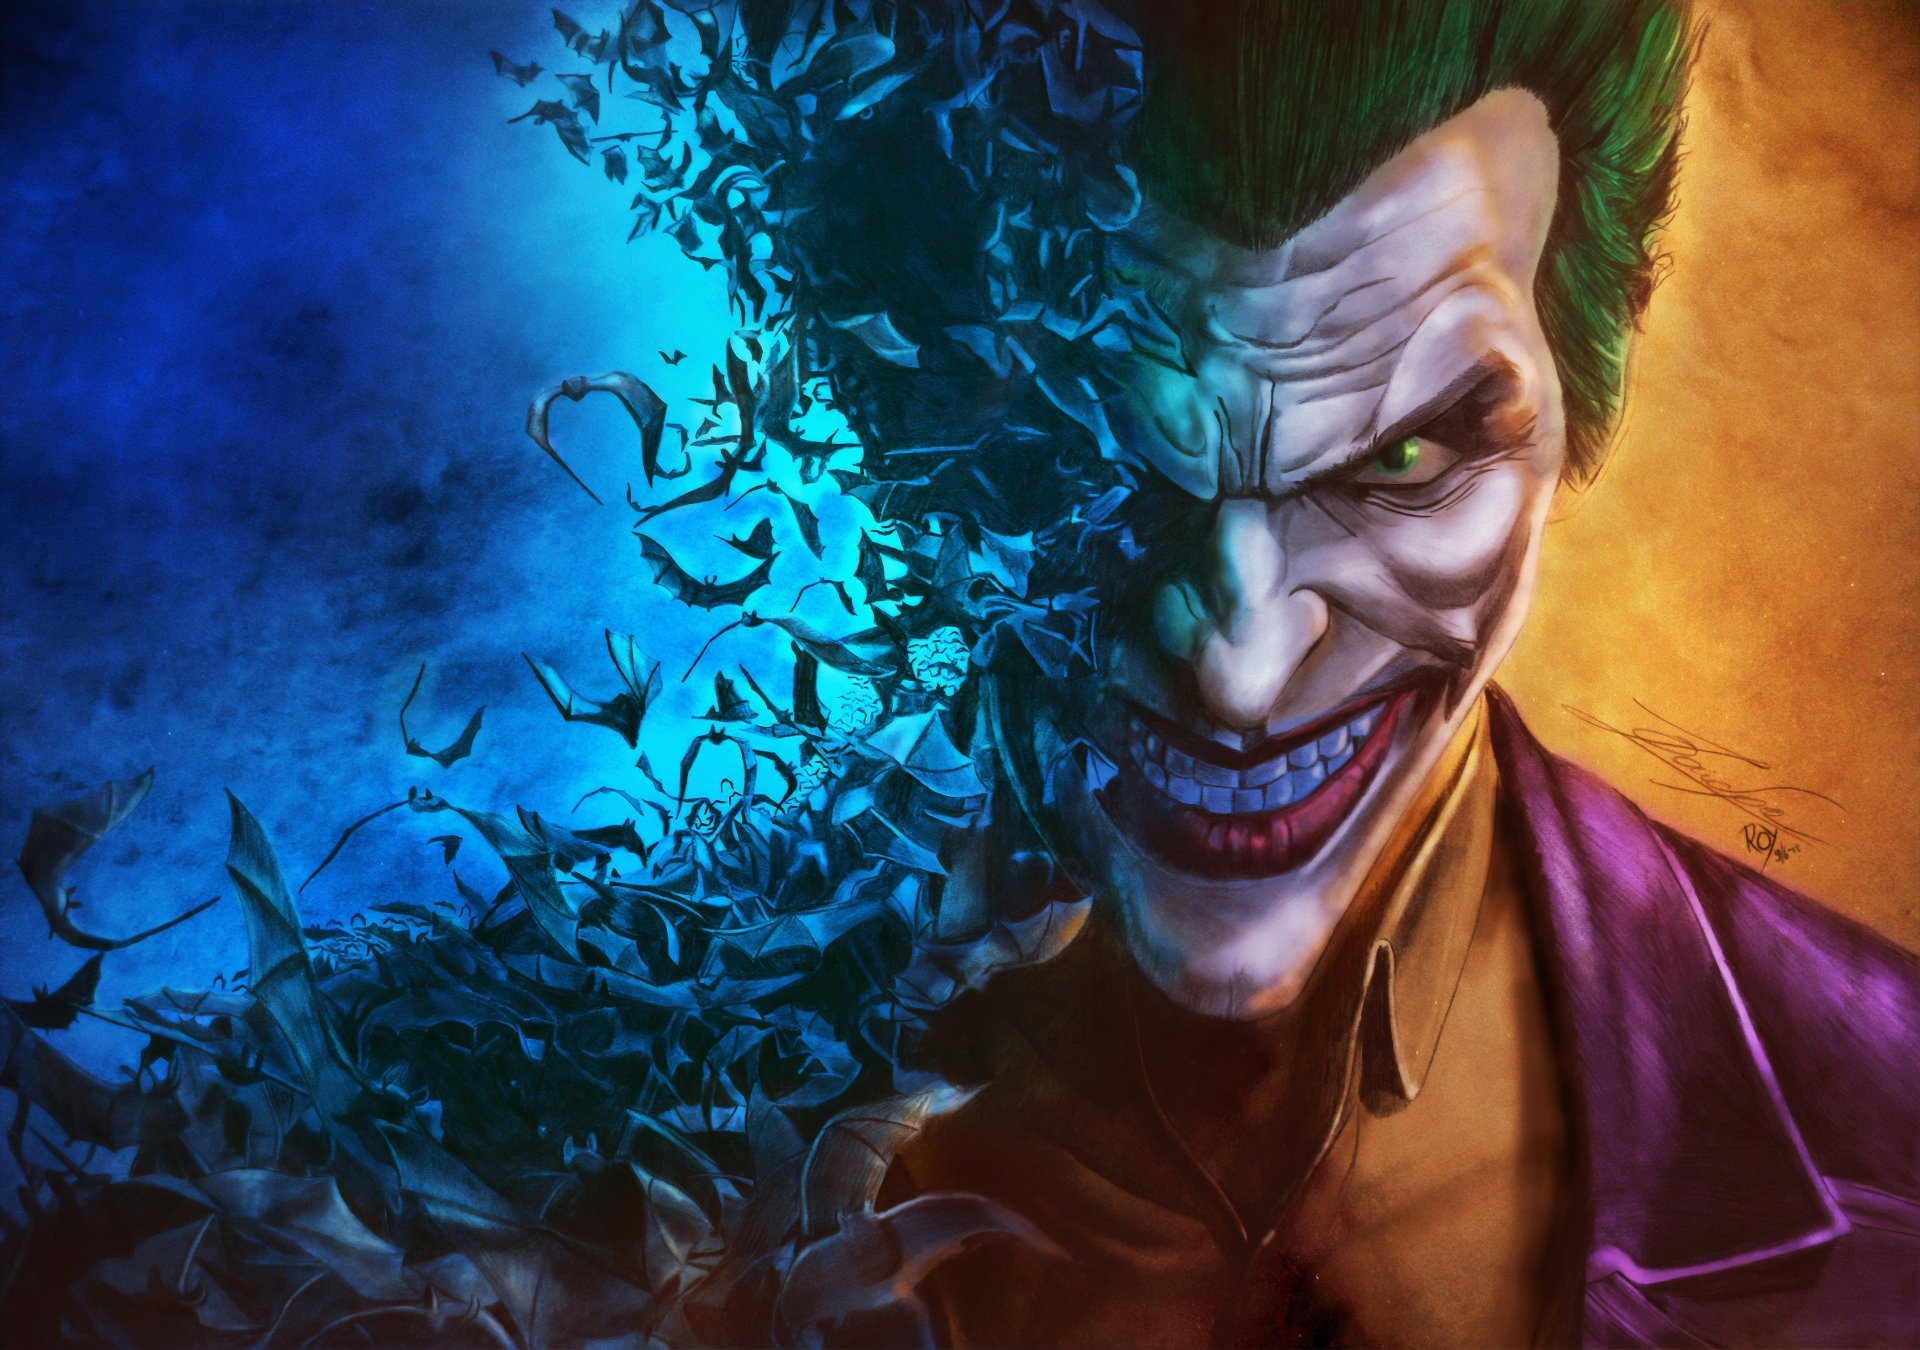 Joker 4k Ultra Hd Wallpaper Background Image 3840x2700 Id1041483